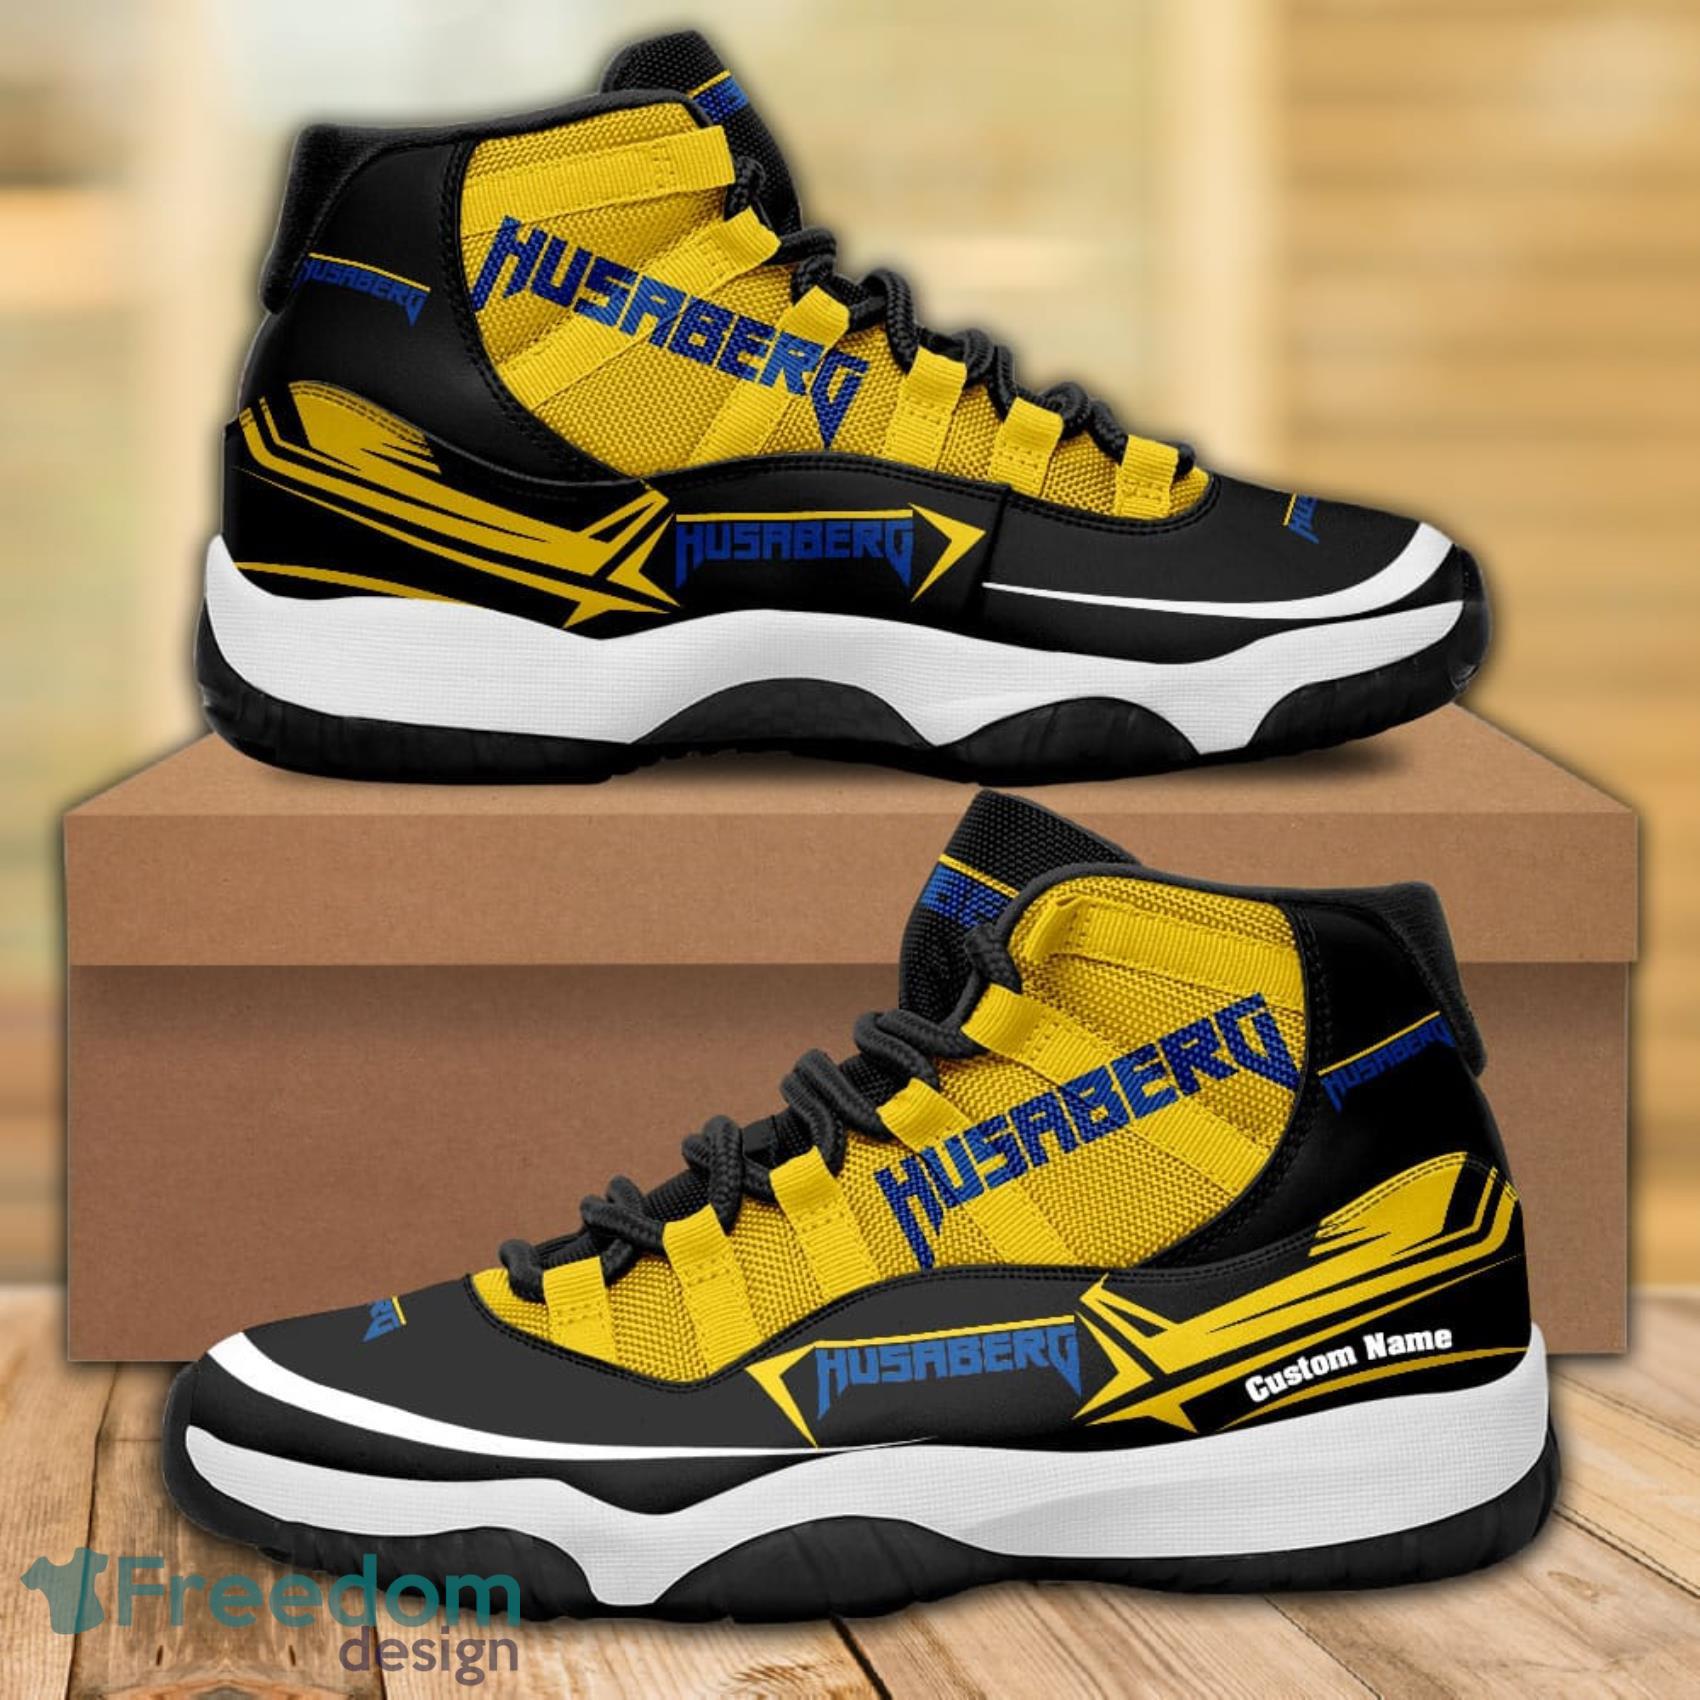 Husqvarna Custom Name Any Logo Or Car Model Air Jordan 11 Shoes Gift For  Fans - Freedomdesign